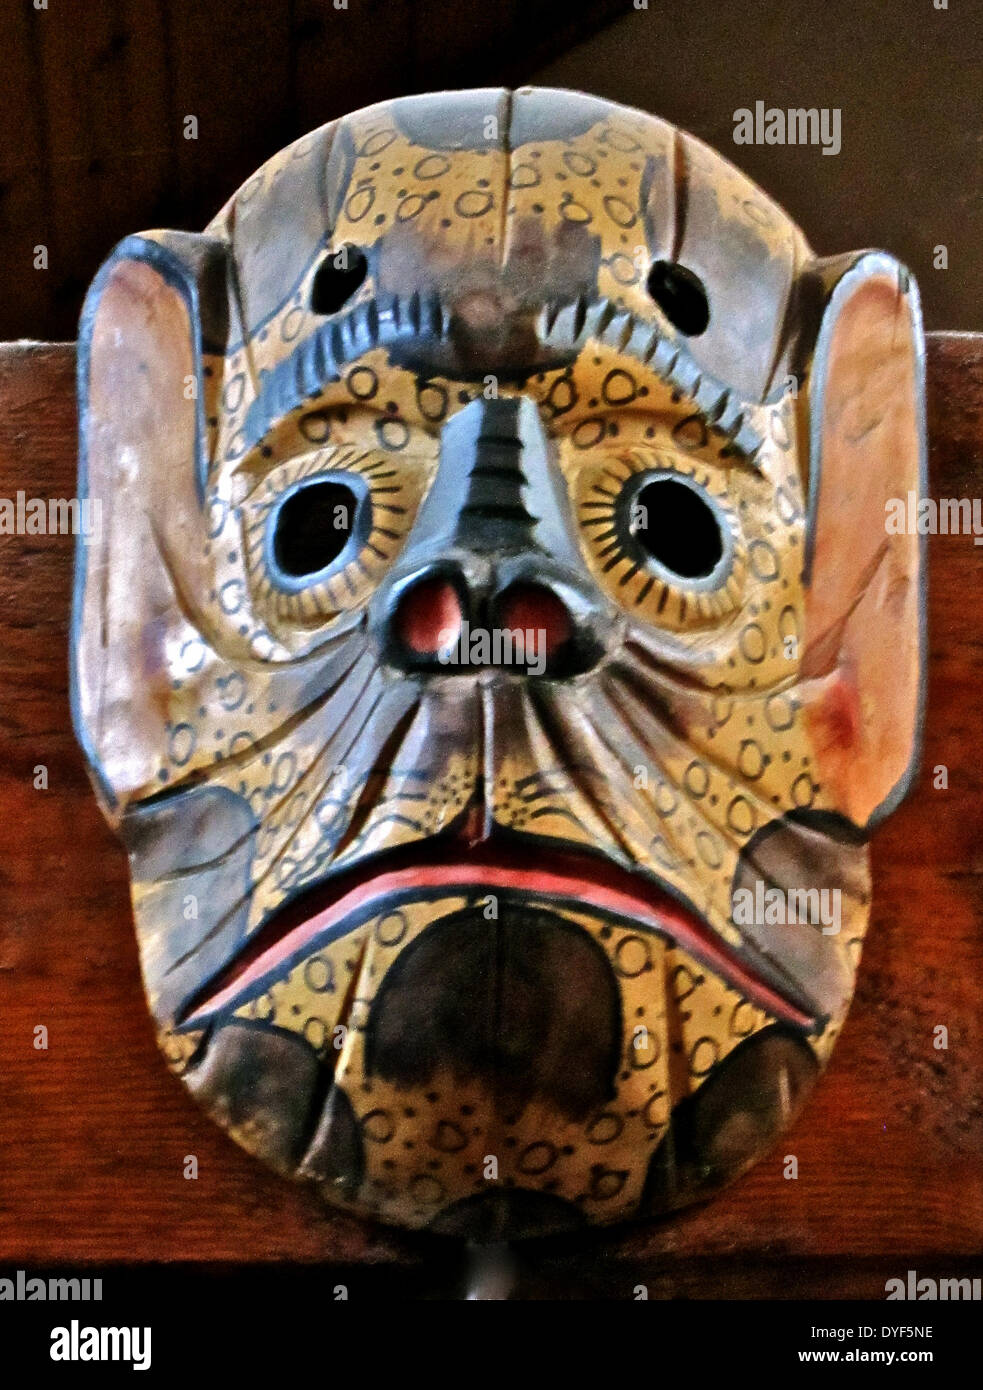 Folk art: Mono Monkey Mask from Guatemala. Stock Photo